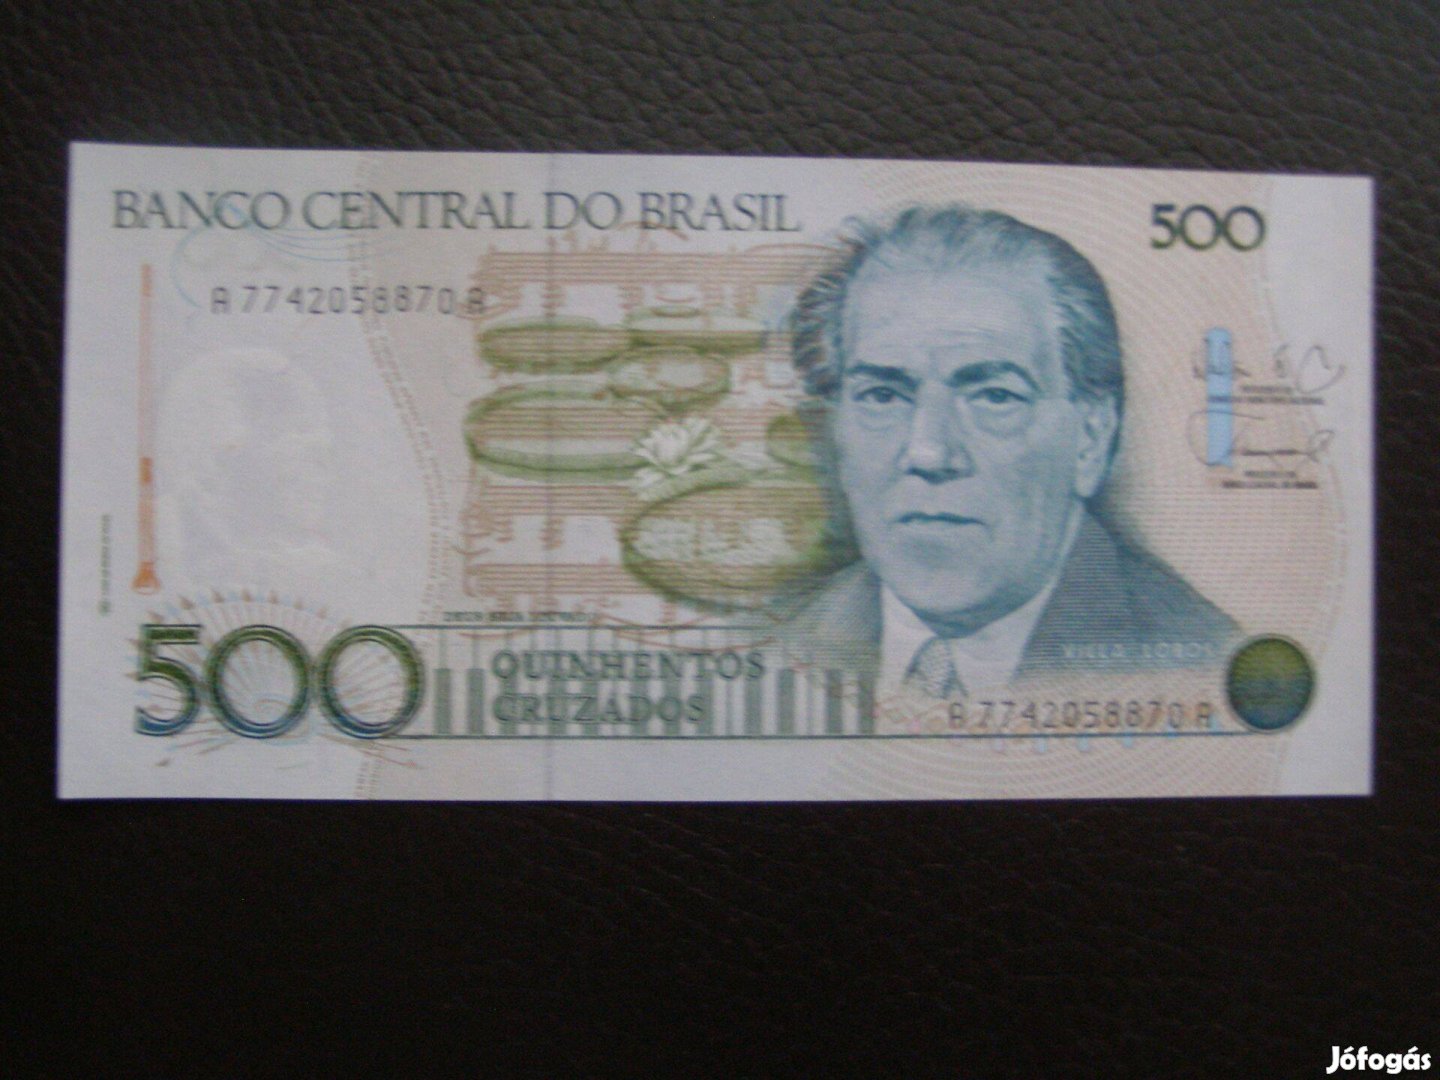 Brazil 500 cruzados,1990. Hajtatlan -